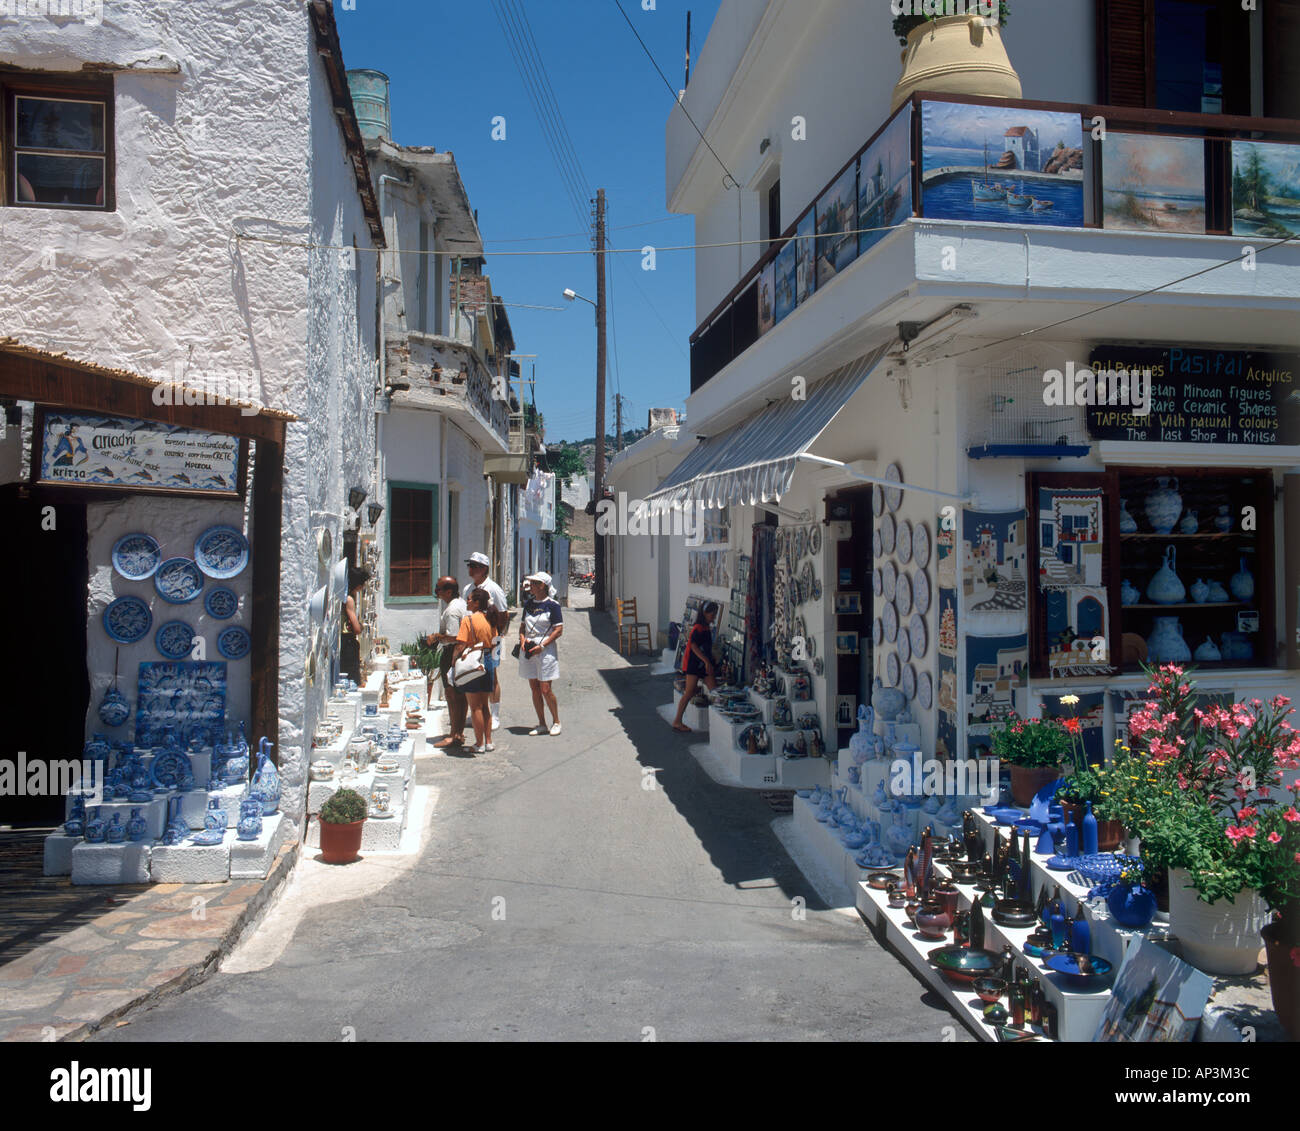 Mountain Village of Kritsa, near Aghios Nikolaos, Crete, Greece Stock Photo